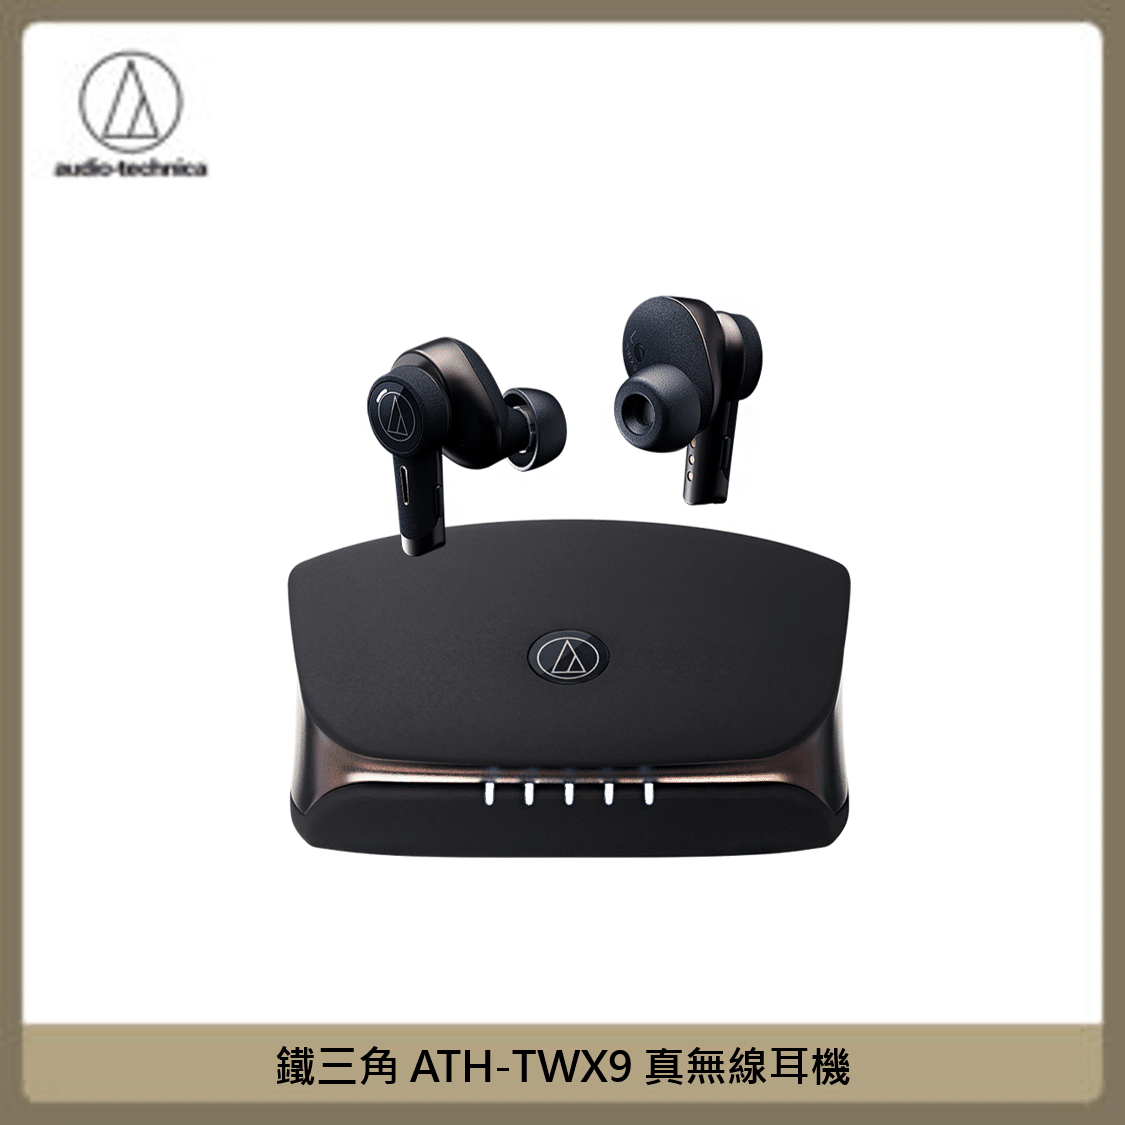 鐵三角ATH-TWX9 真無線耳機(黑) | 法雅客網路商店